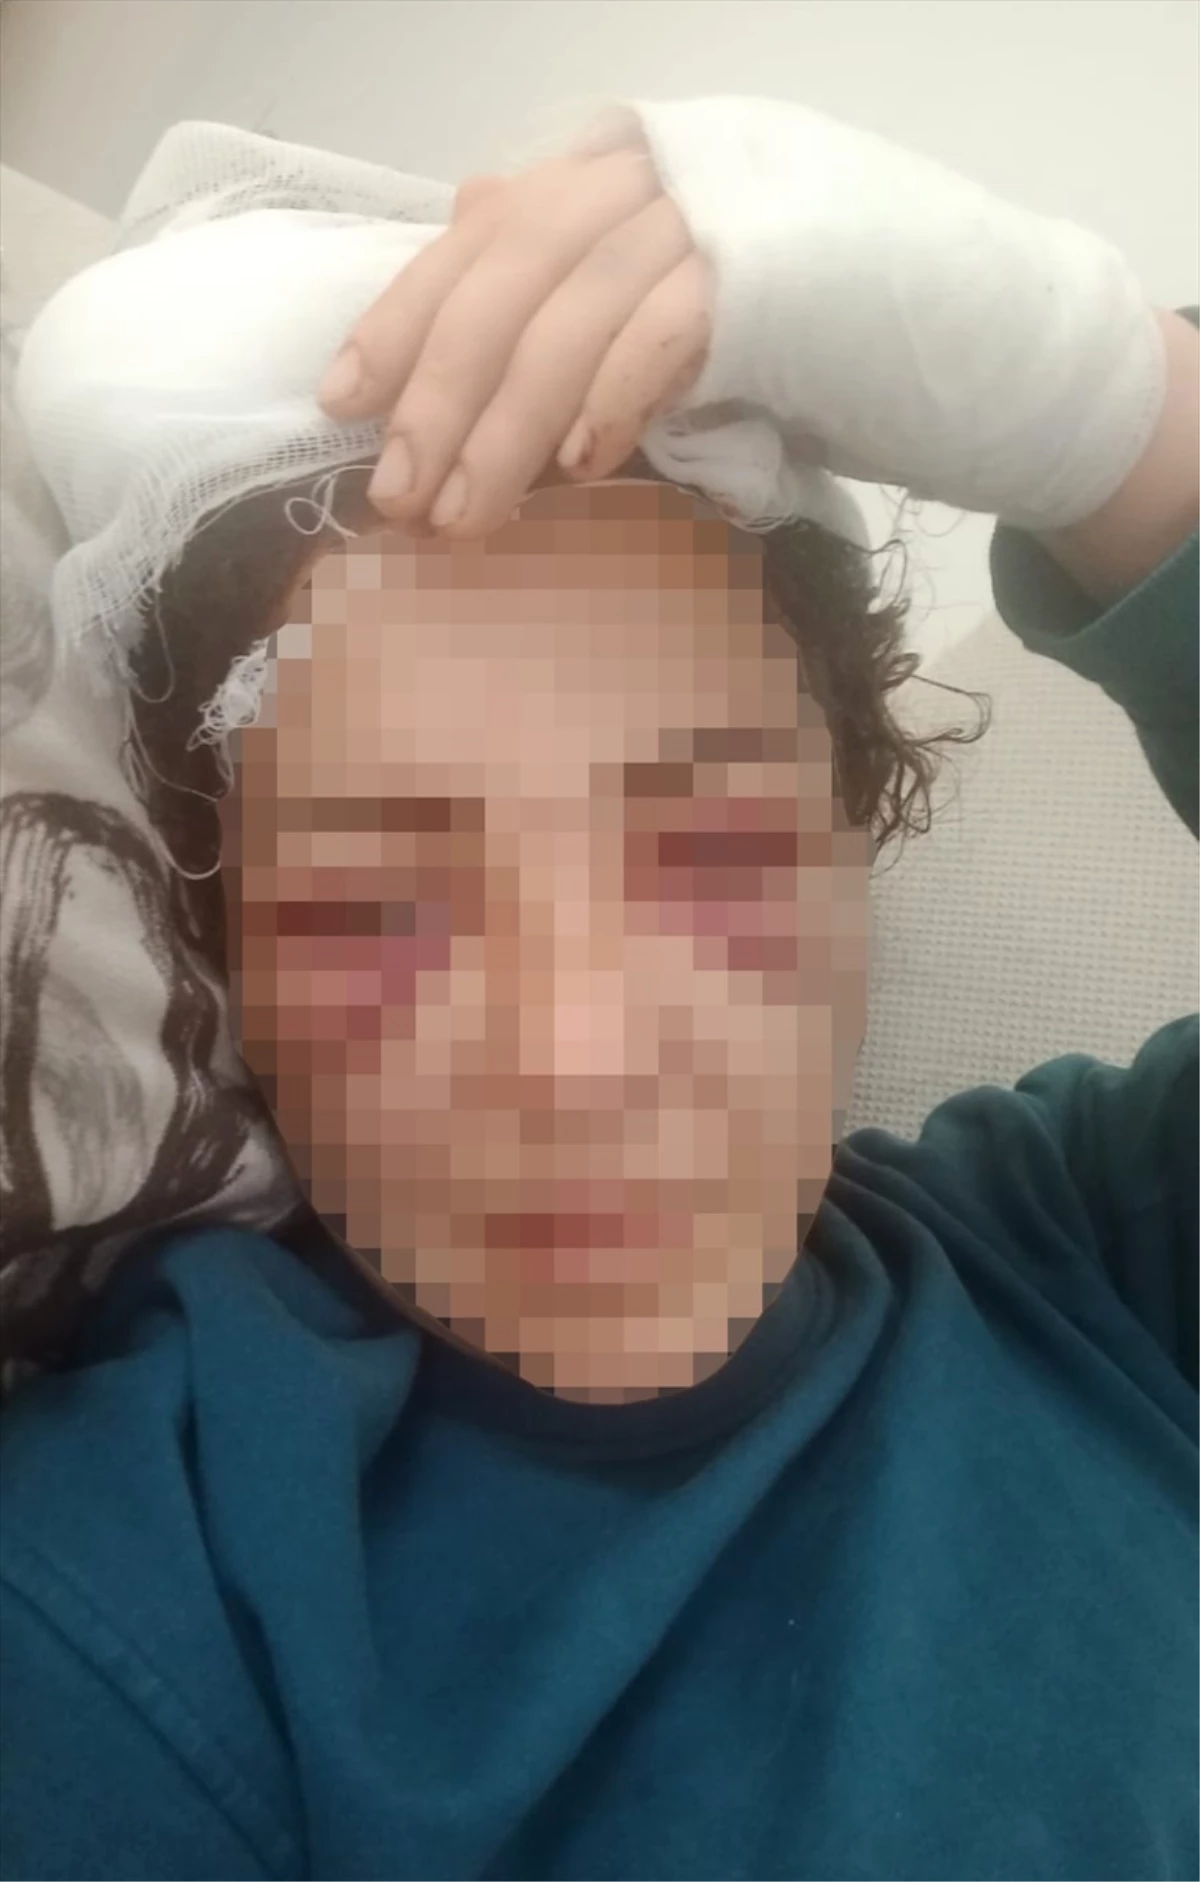 Elektronik kelepçe takılı olan kadın, kocasının bıçaklı saldırısına uğradı